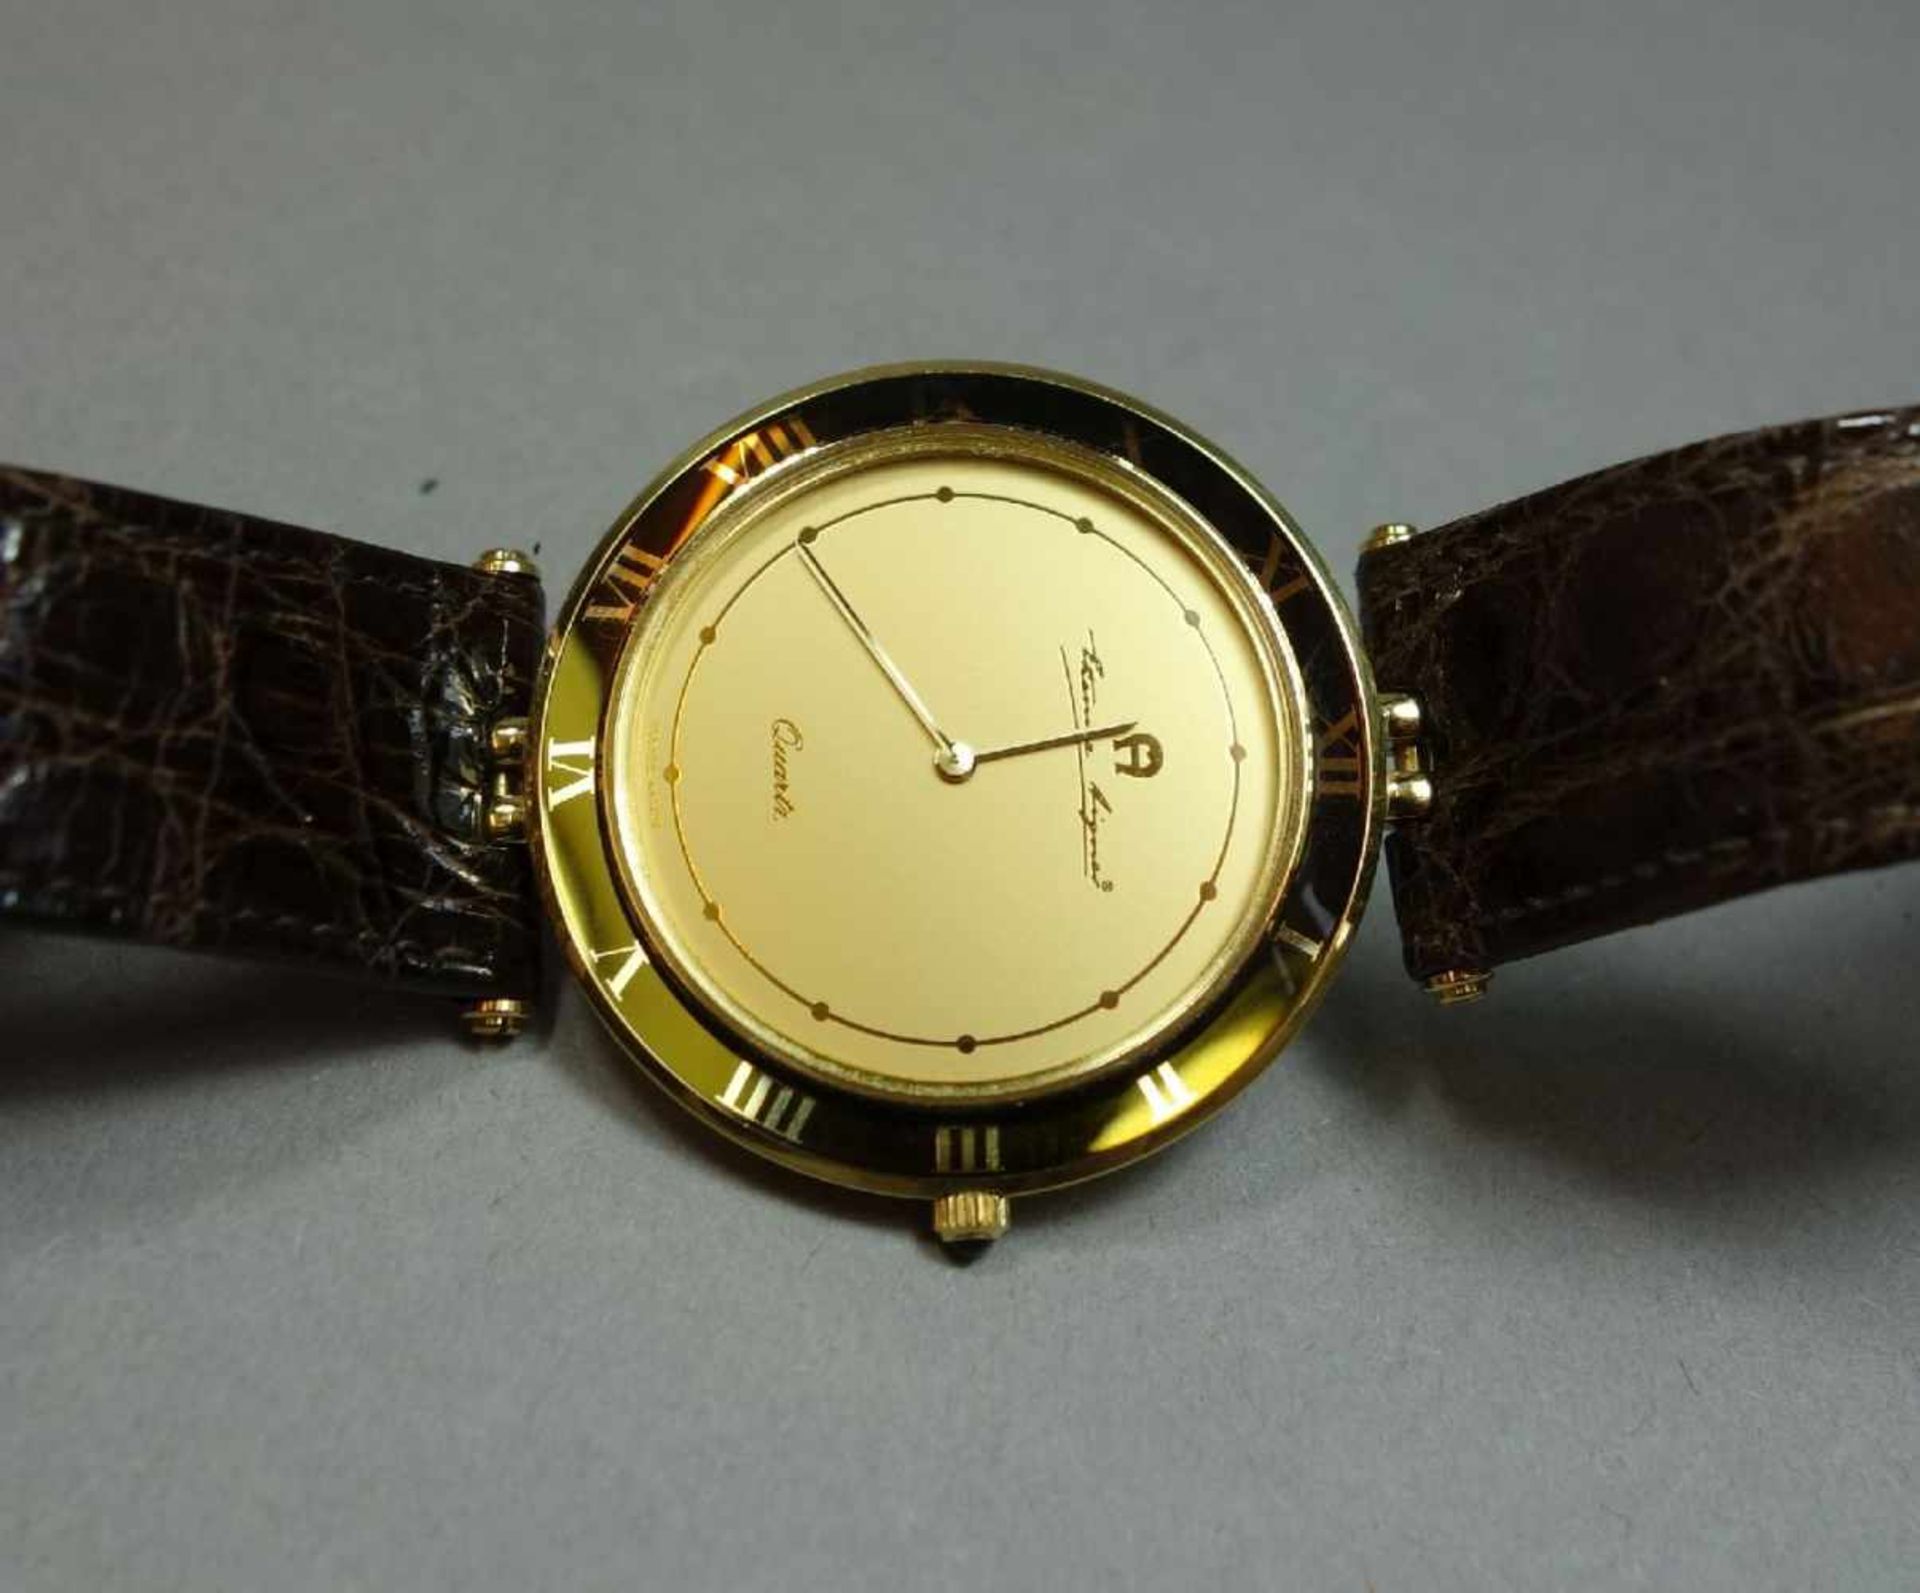 GOLDENE ARMBANDUHR ETIENNE AIGNER / wristwatch, Quarz-Uhr, Manufaktur Etienne Aigner AG / München. - Image 3 of 7